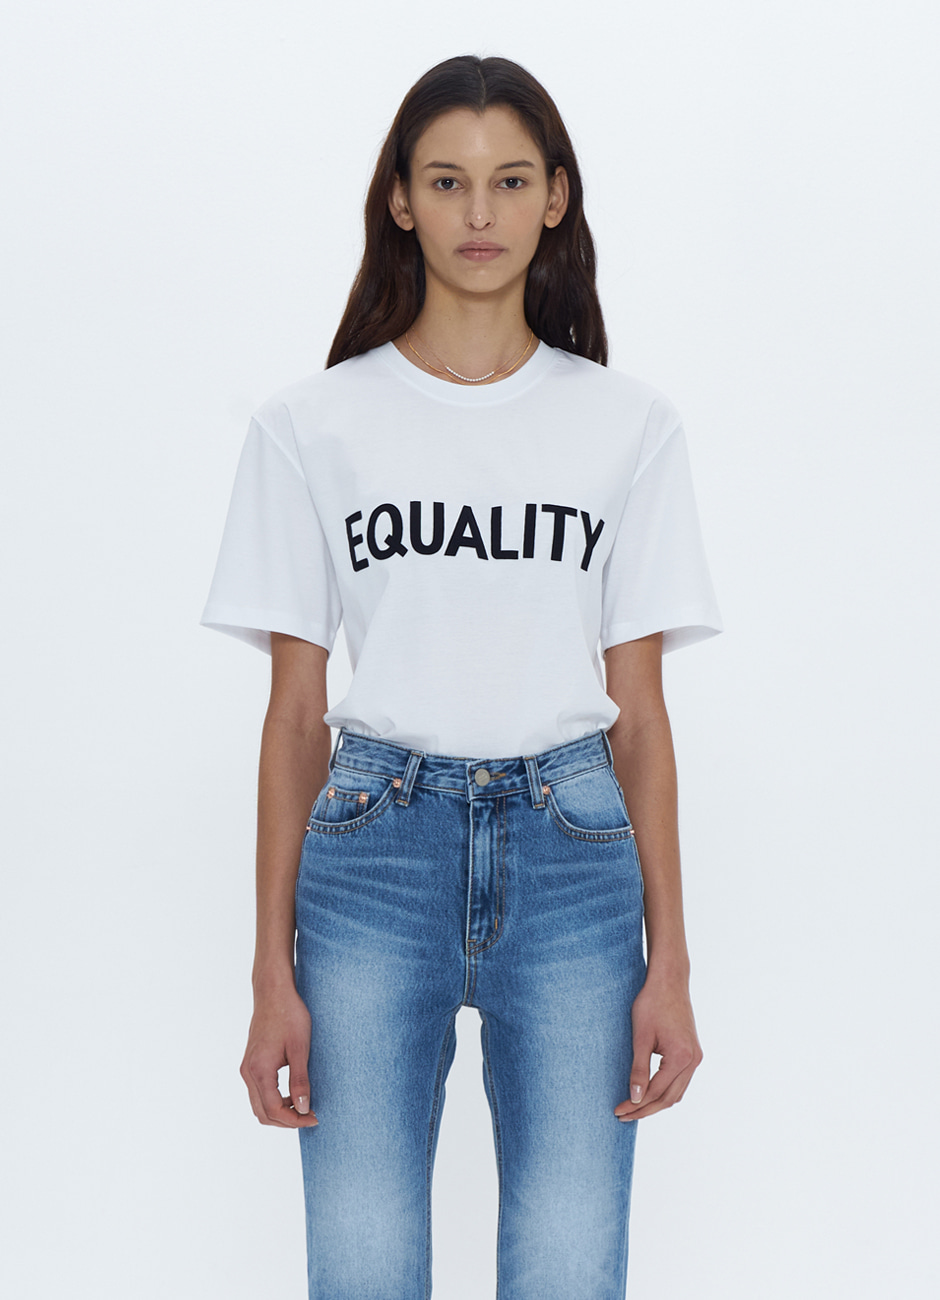 Equality T-shirt (unisex)